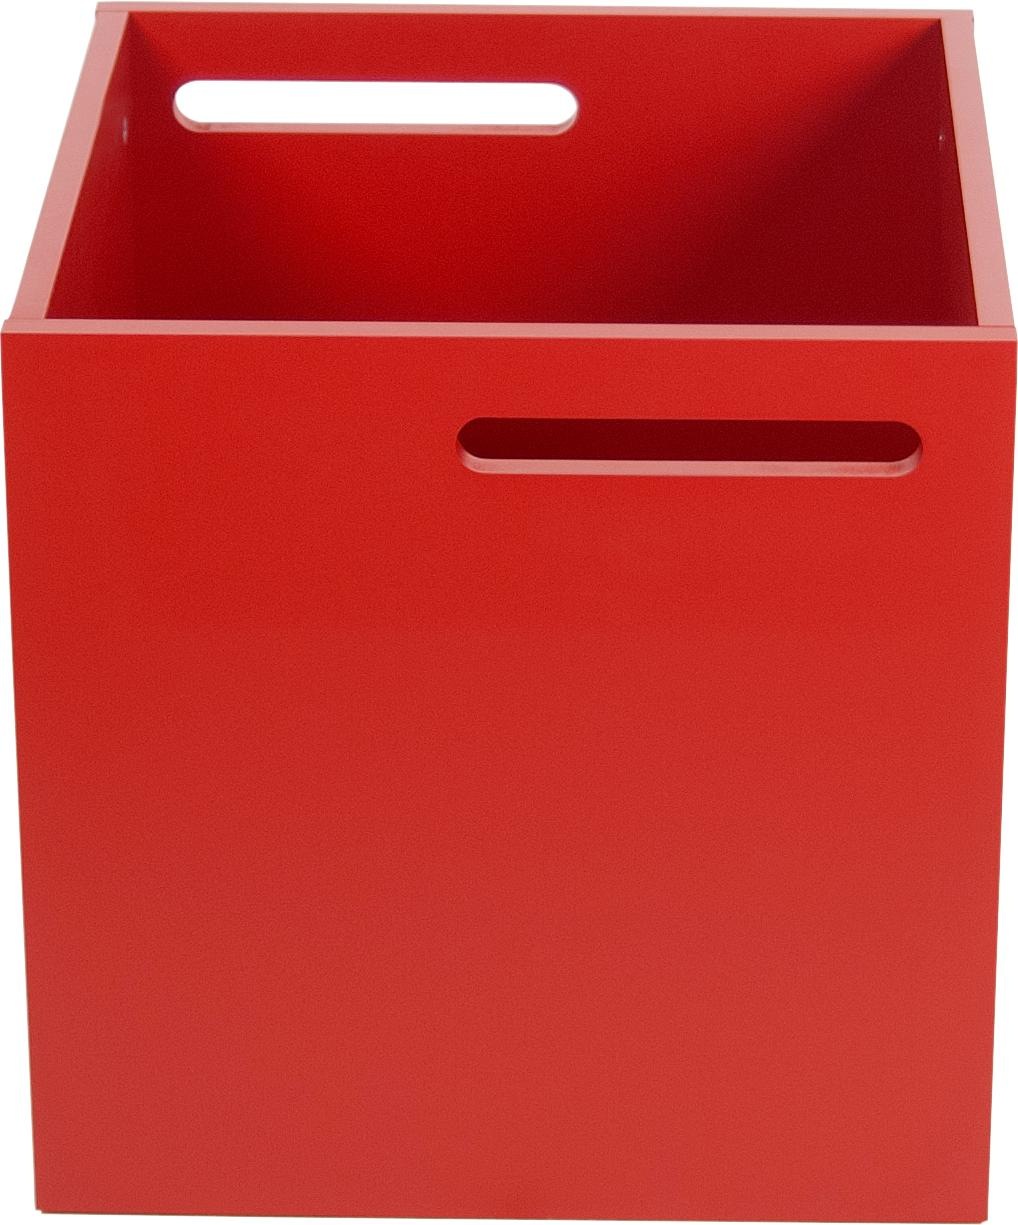 TemaHome Aufbewahrungsbox »Berlin«, mit Muldegriffen für Transport, verschiedene Farbvarianten erhältlich